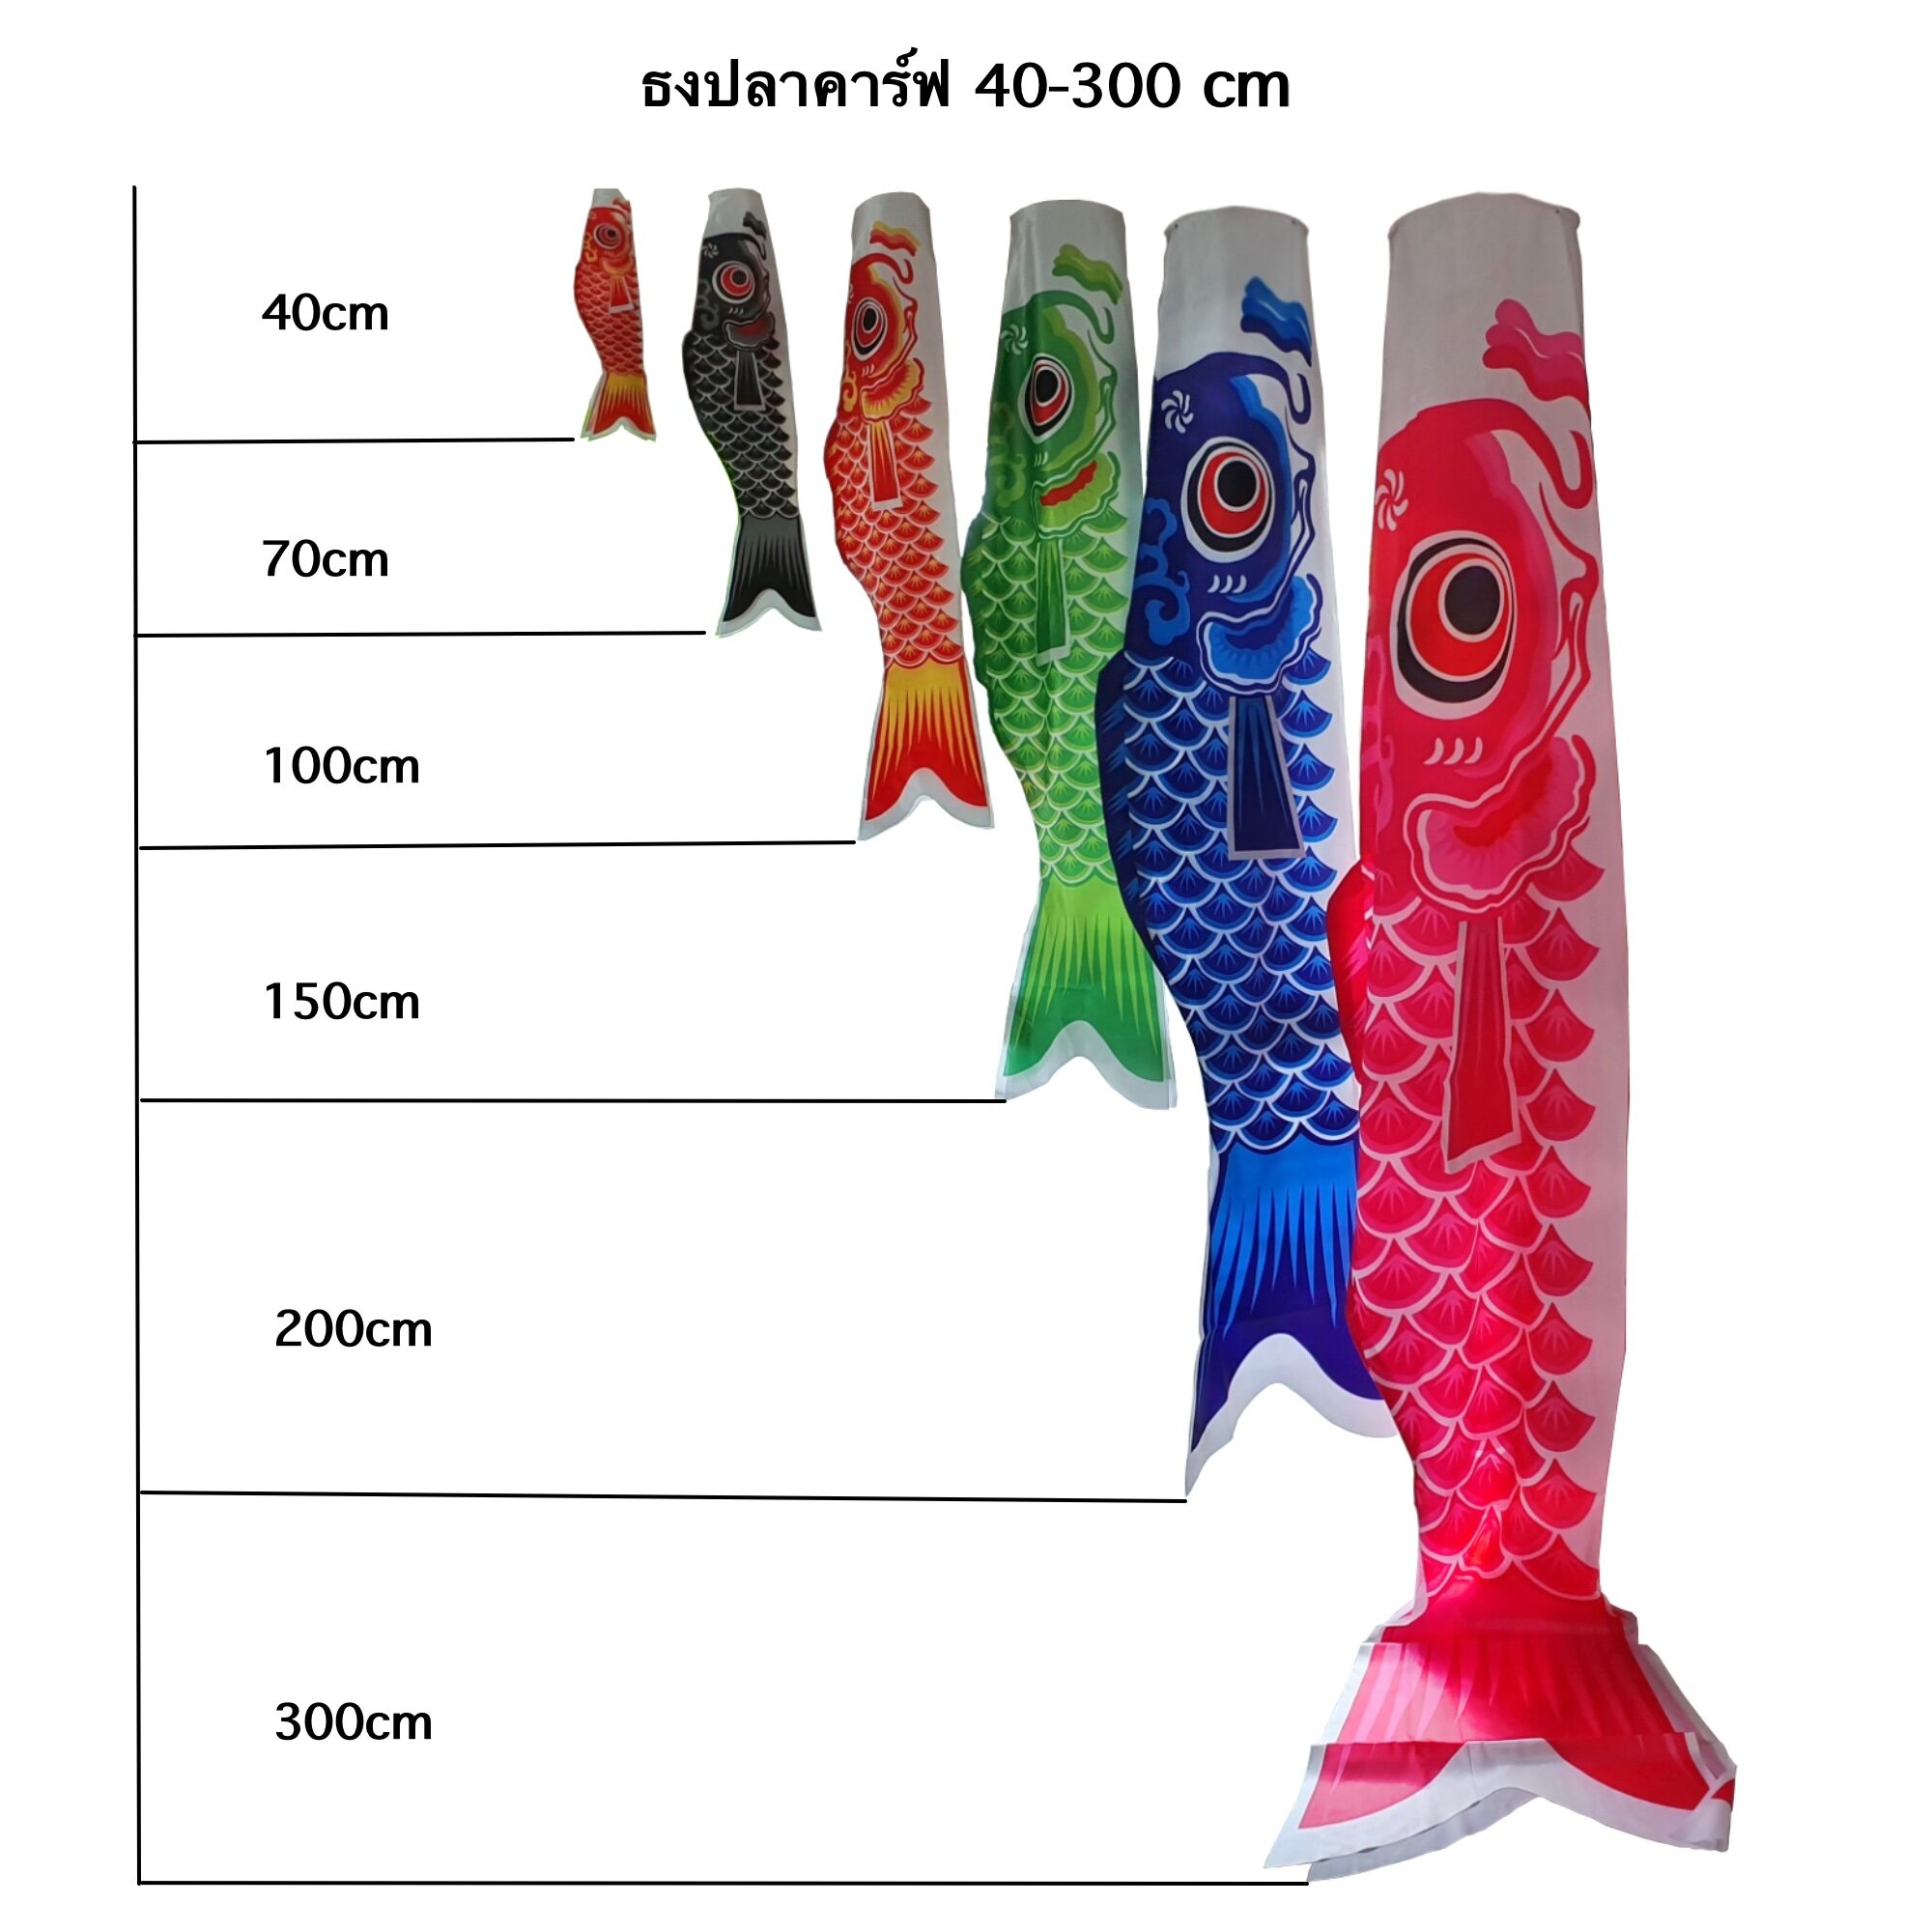 ธงปลา ธงปลาคาร์ฟ ธงปลาคราฟญี่ปุ่น 40cm-300cm [ส่งฟรีเมื่อซื้อครบ 99 บาท]